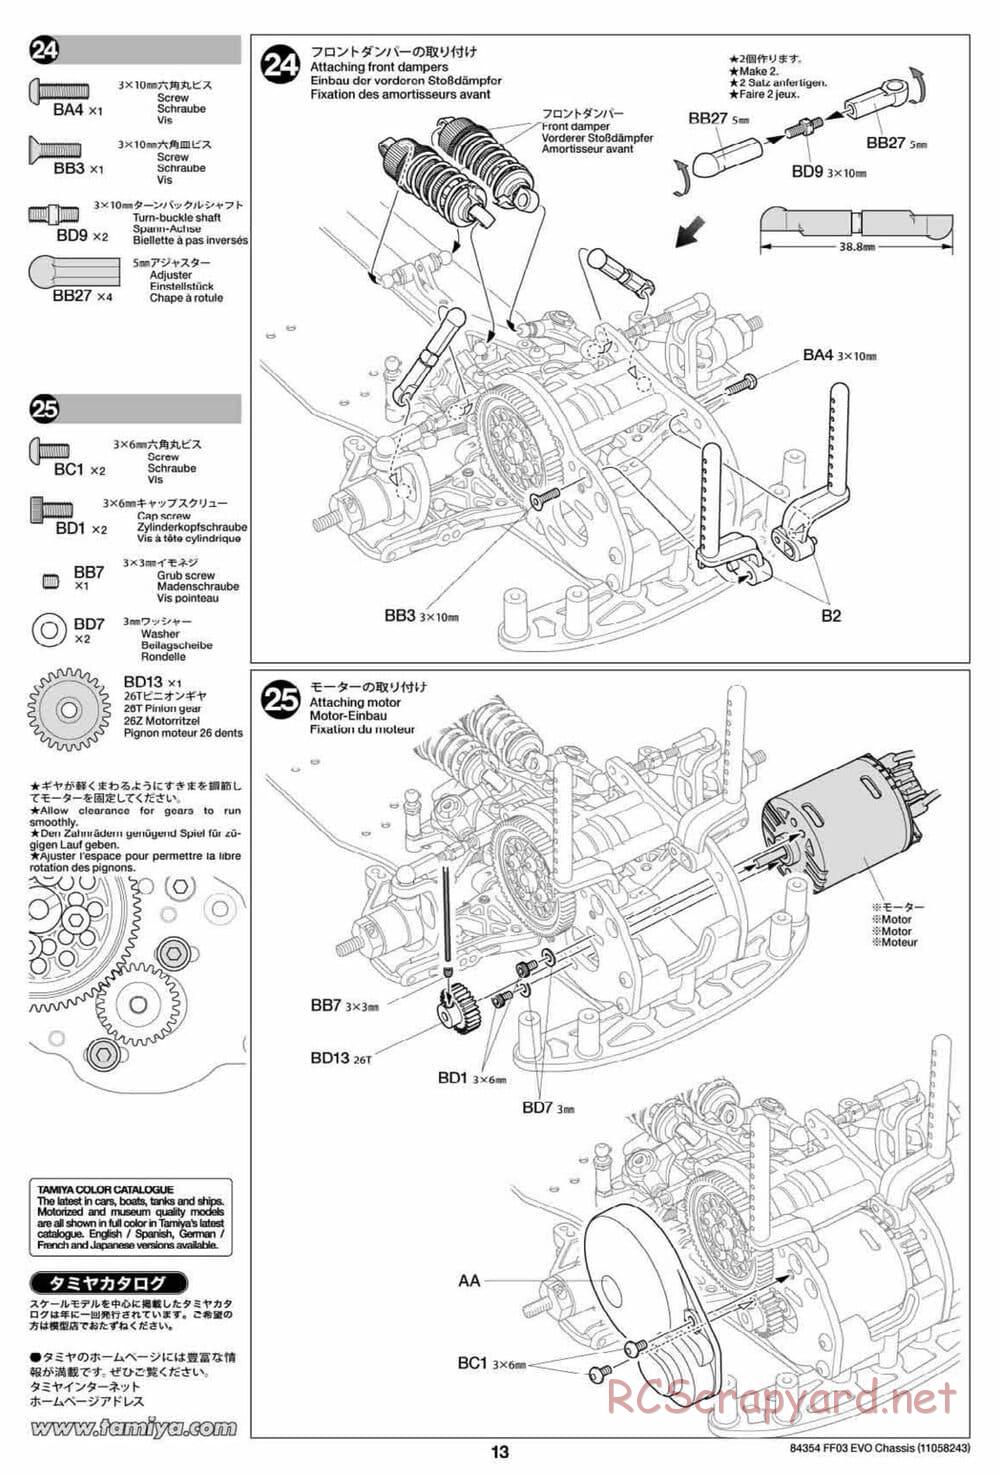 Tamiya - FF-03 Evo Chassis - Manual - Page 13